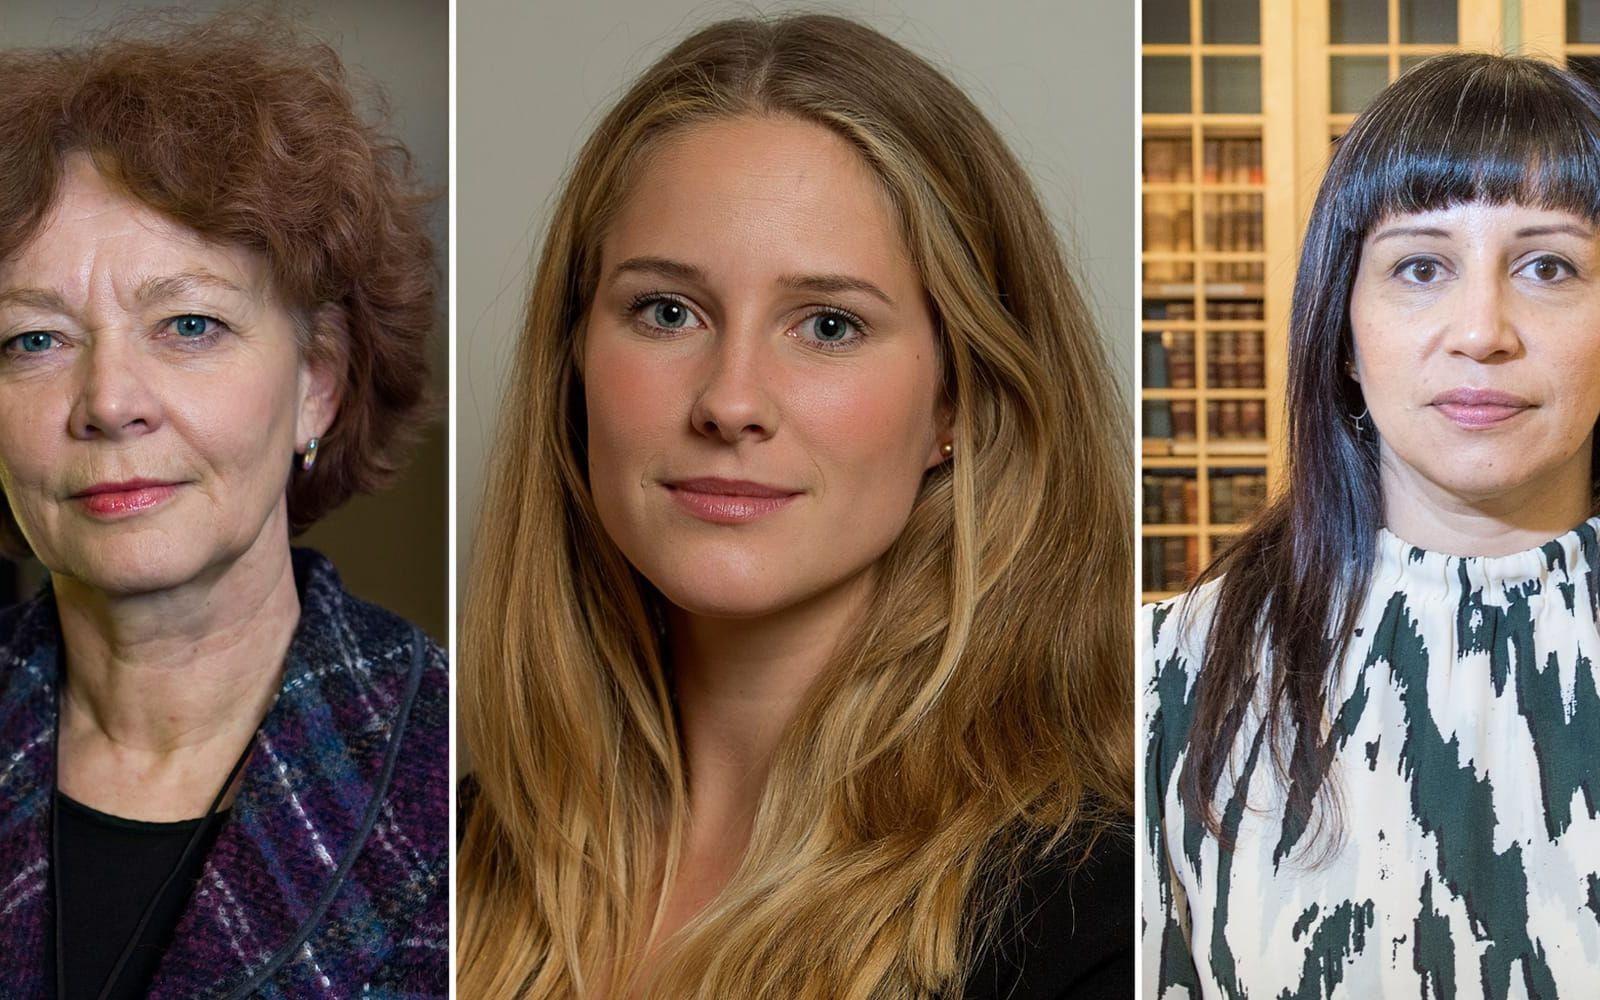 Maria Leissner, före detta partiledare (L), Ida Drougge, riksdagsledamot (M), och Rosanna Dinamarca (V) är några av de kvinnliga politiker som undertecknat uppropet. Bild: TT